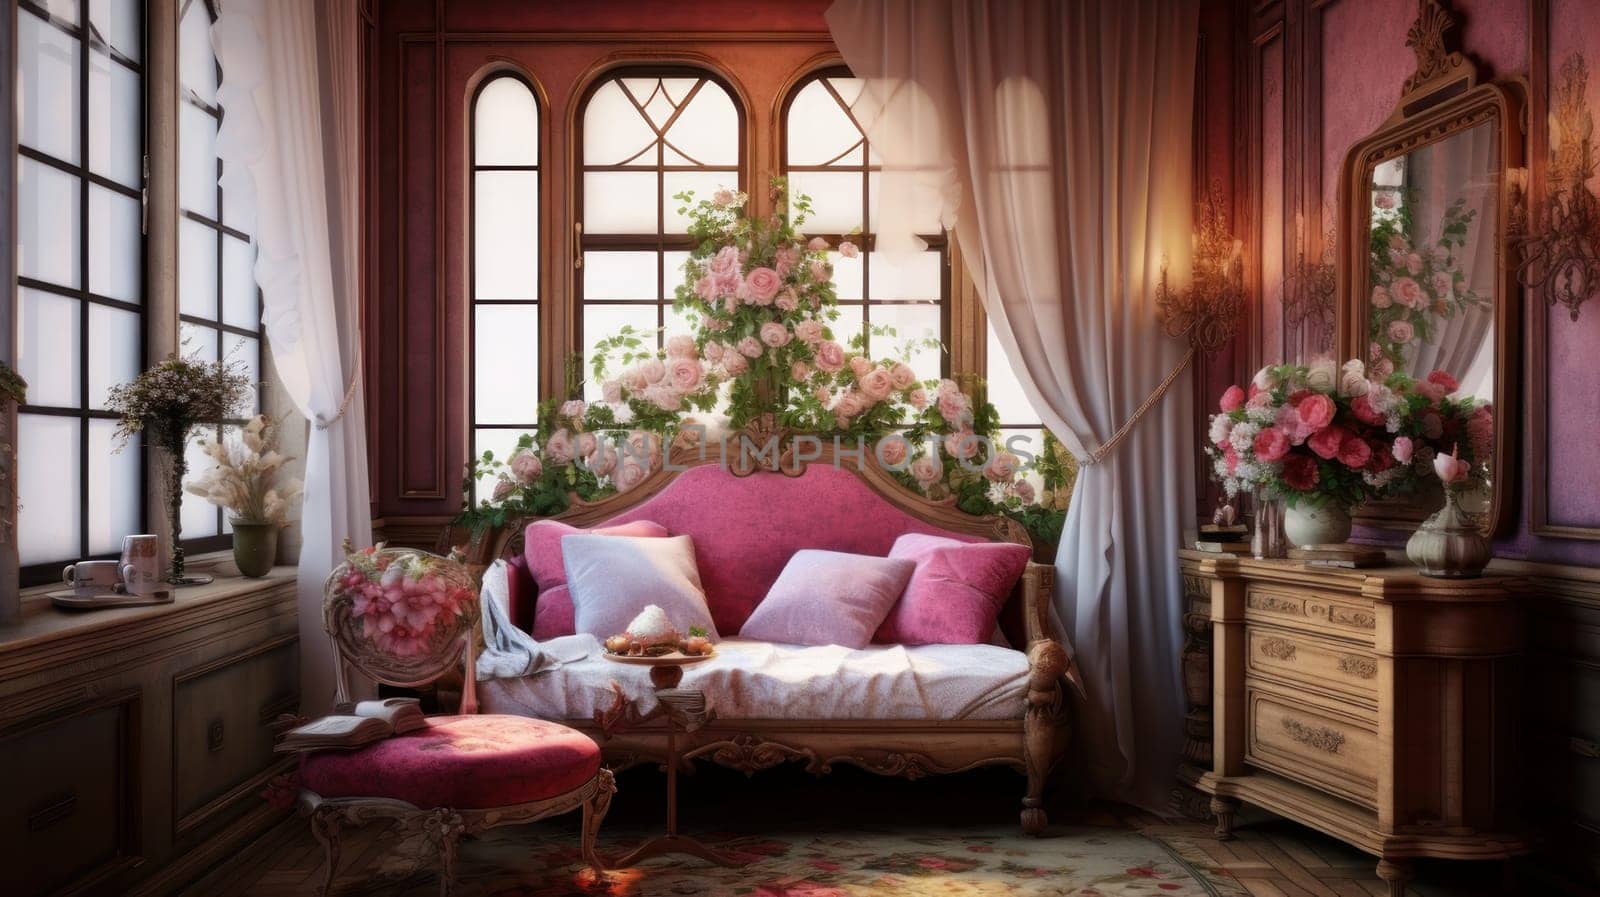 Interior of a cozy room in romantic style by Alla_Yurtayeva